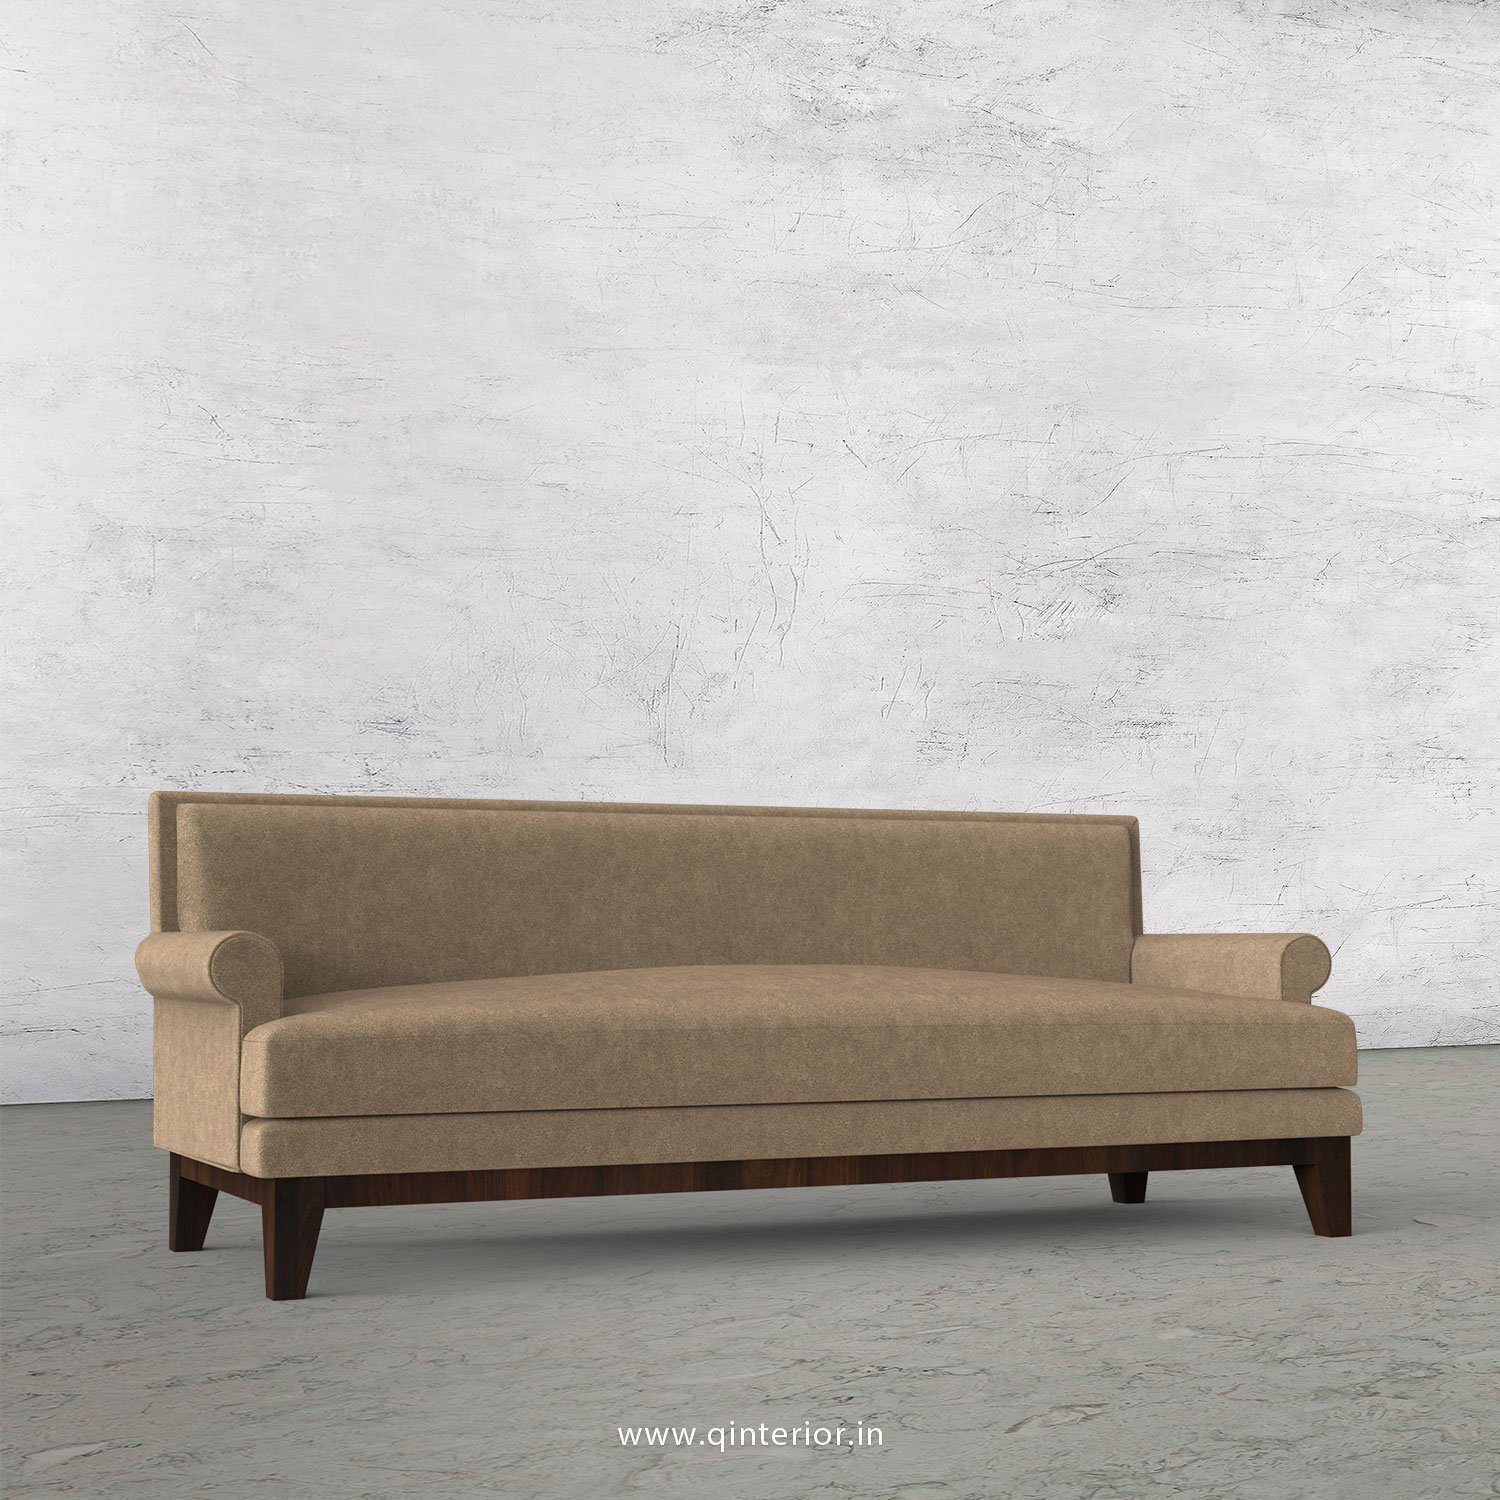 Aviana 3 Seater Sofa in Velvet Fabric - SFA001 VL11